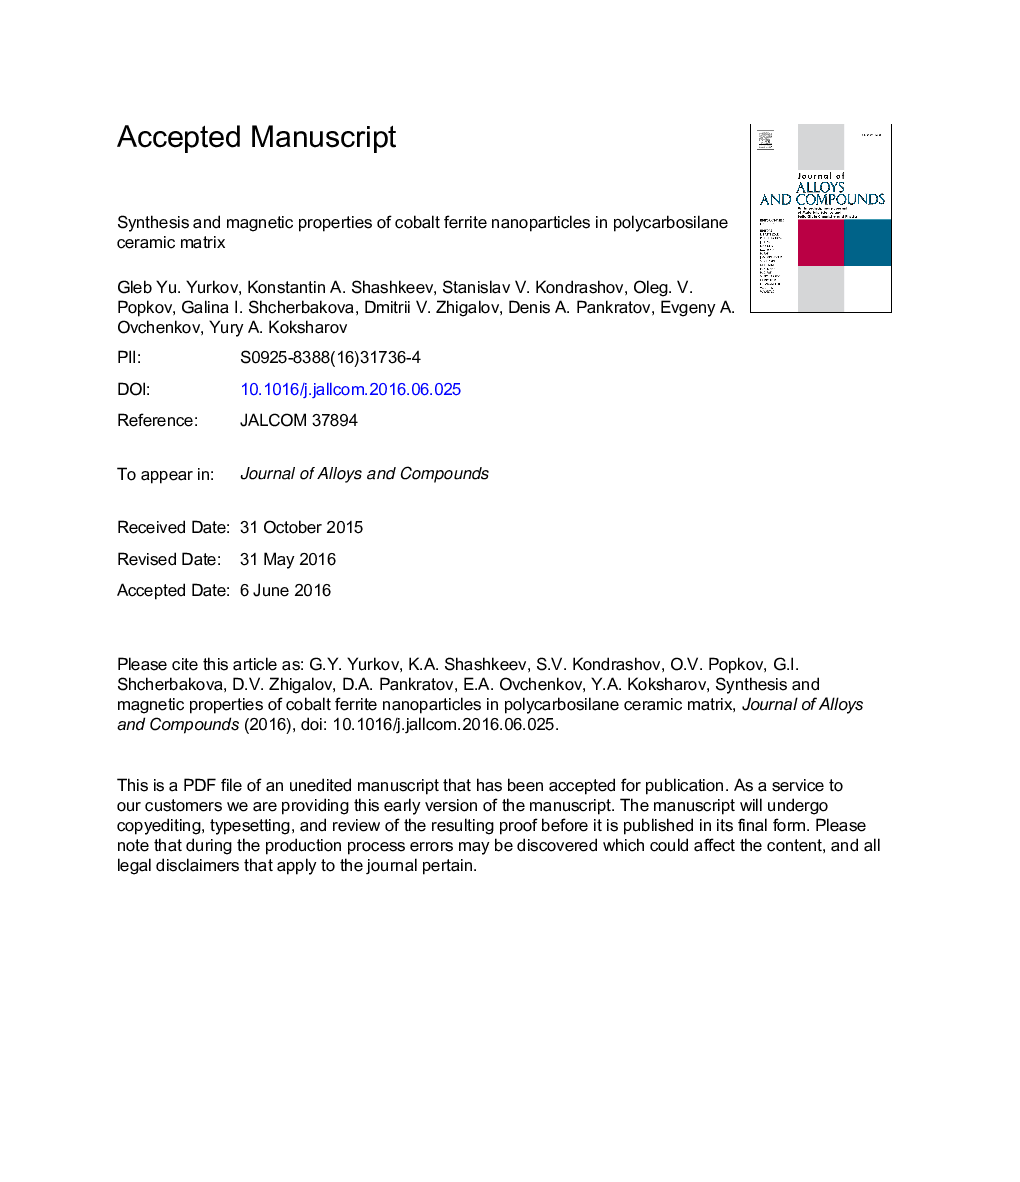 سنتز و خواص مغناطیسی نانوذرات فریت کبالت در ماتریکس سرامیکی پلی کربوسیلان 